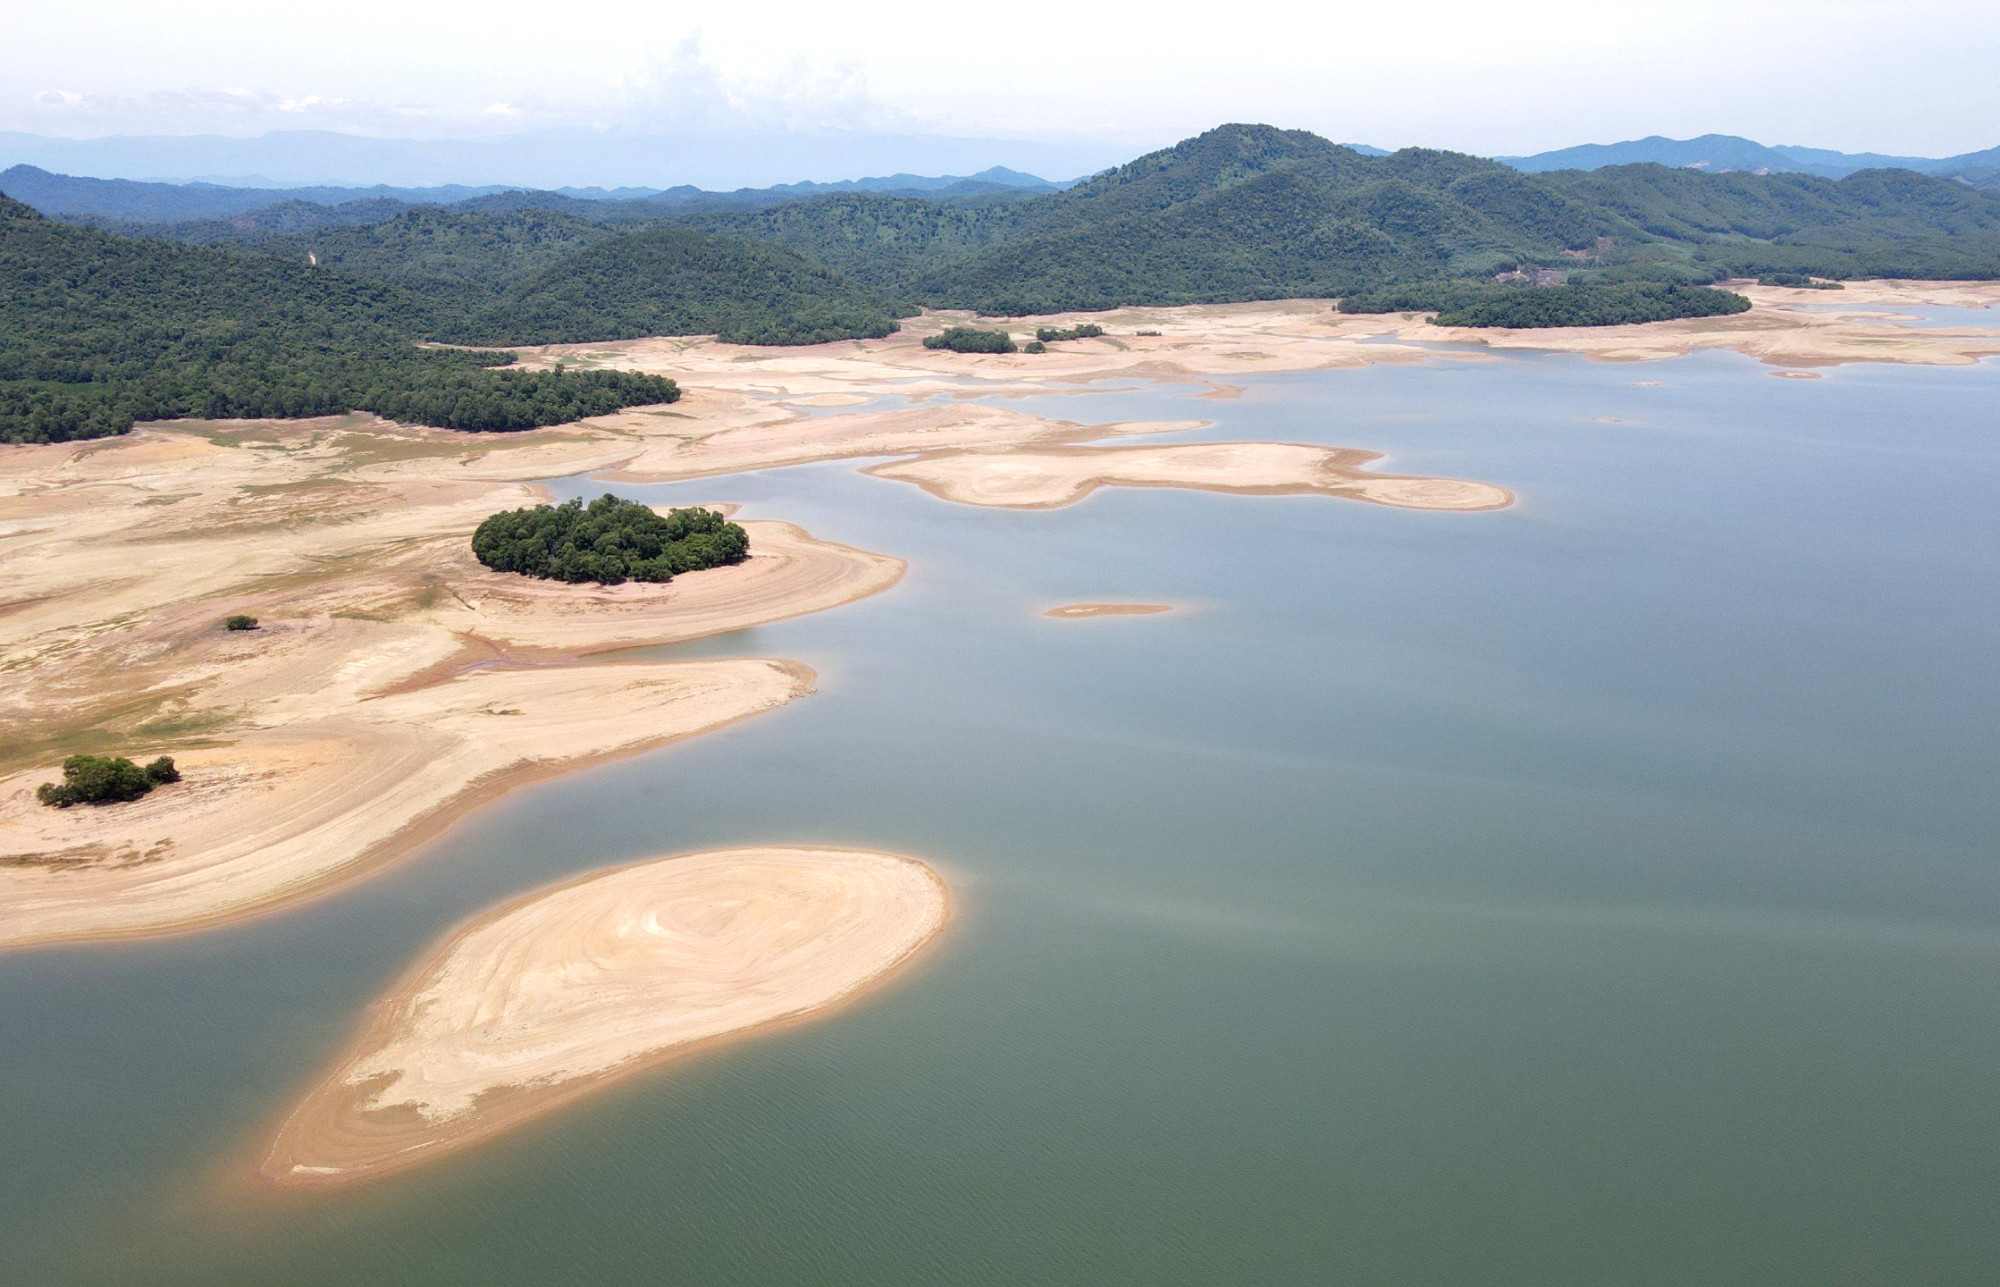 Tình trạng khô hạn tương tự cũng đang xảy ra tại hồ Kẻ Gỗ (huyện Cẩm Xuyên, tỉnh Hà Tĩnh). Hồ có dung tích gần 400 triệu m3, song hiện mực nước hiện tại trong hồ giảm xuống chỉ còn 45 triệu m3 do hạn hán kéo dài - Ảnh: Trường Phúc